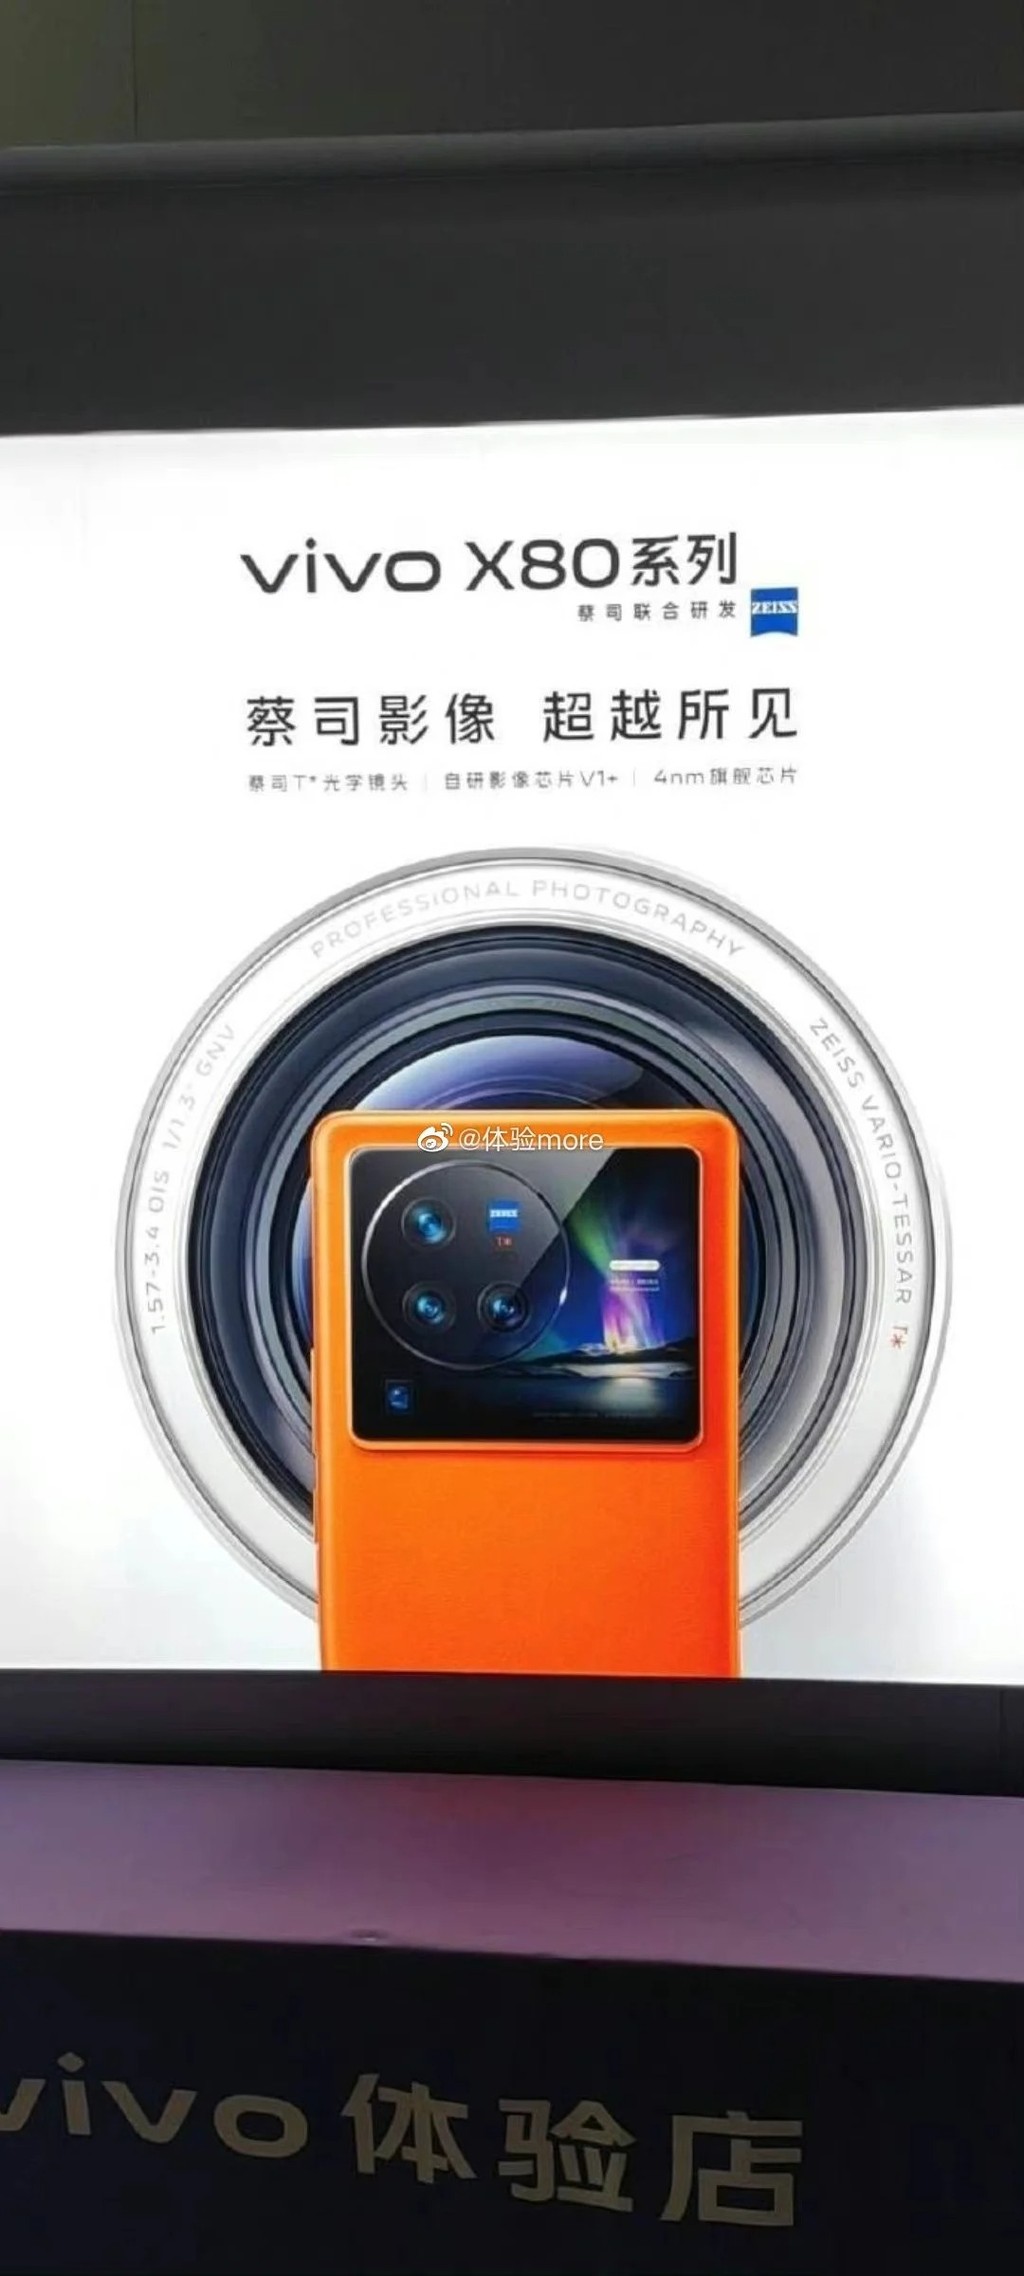 Poster quảng cáo vivo X80 series xuất hiện: 4 camera và bộ xử lý V1+  ảnh 1